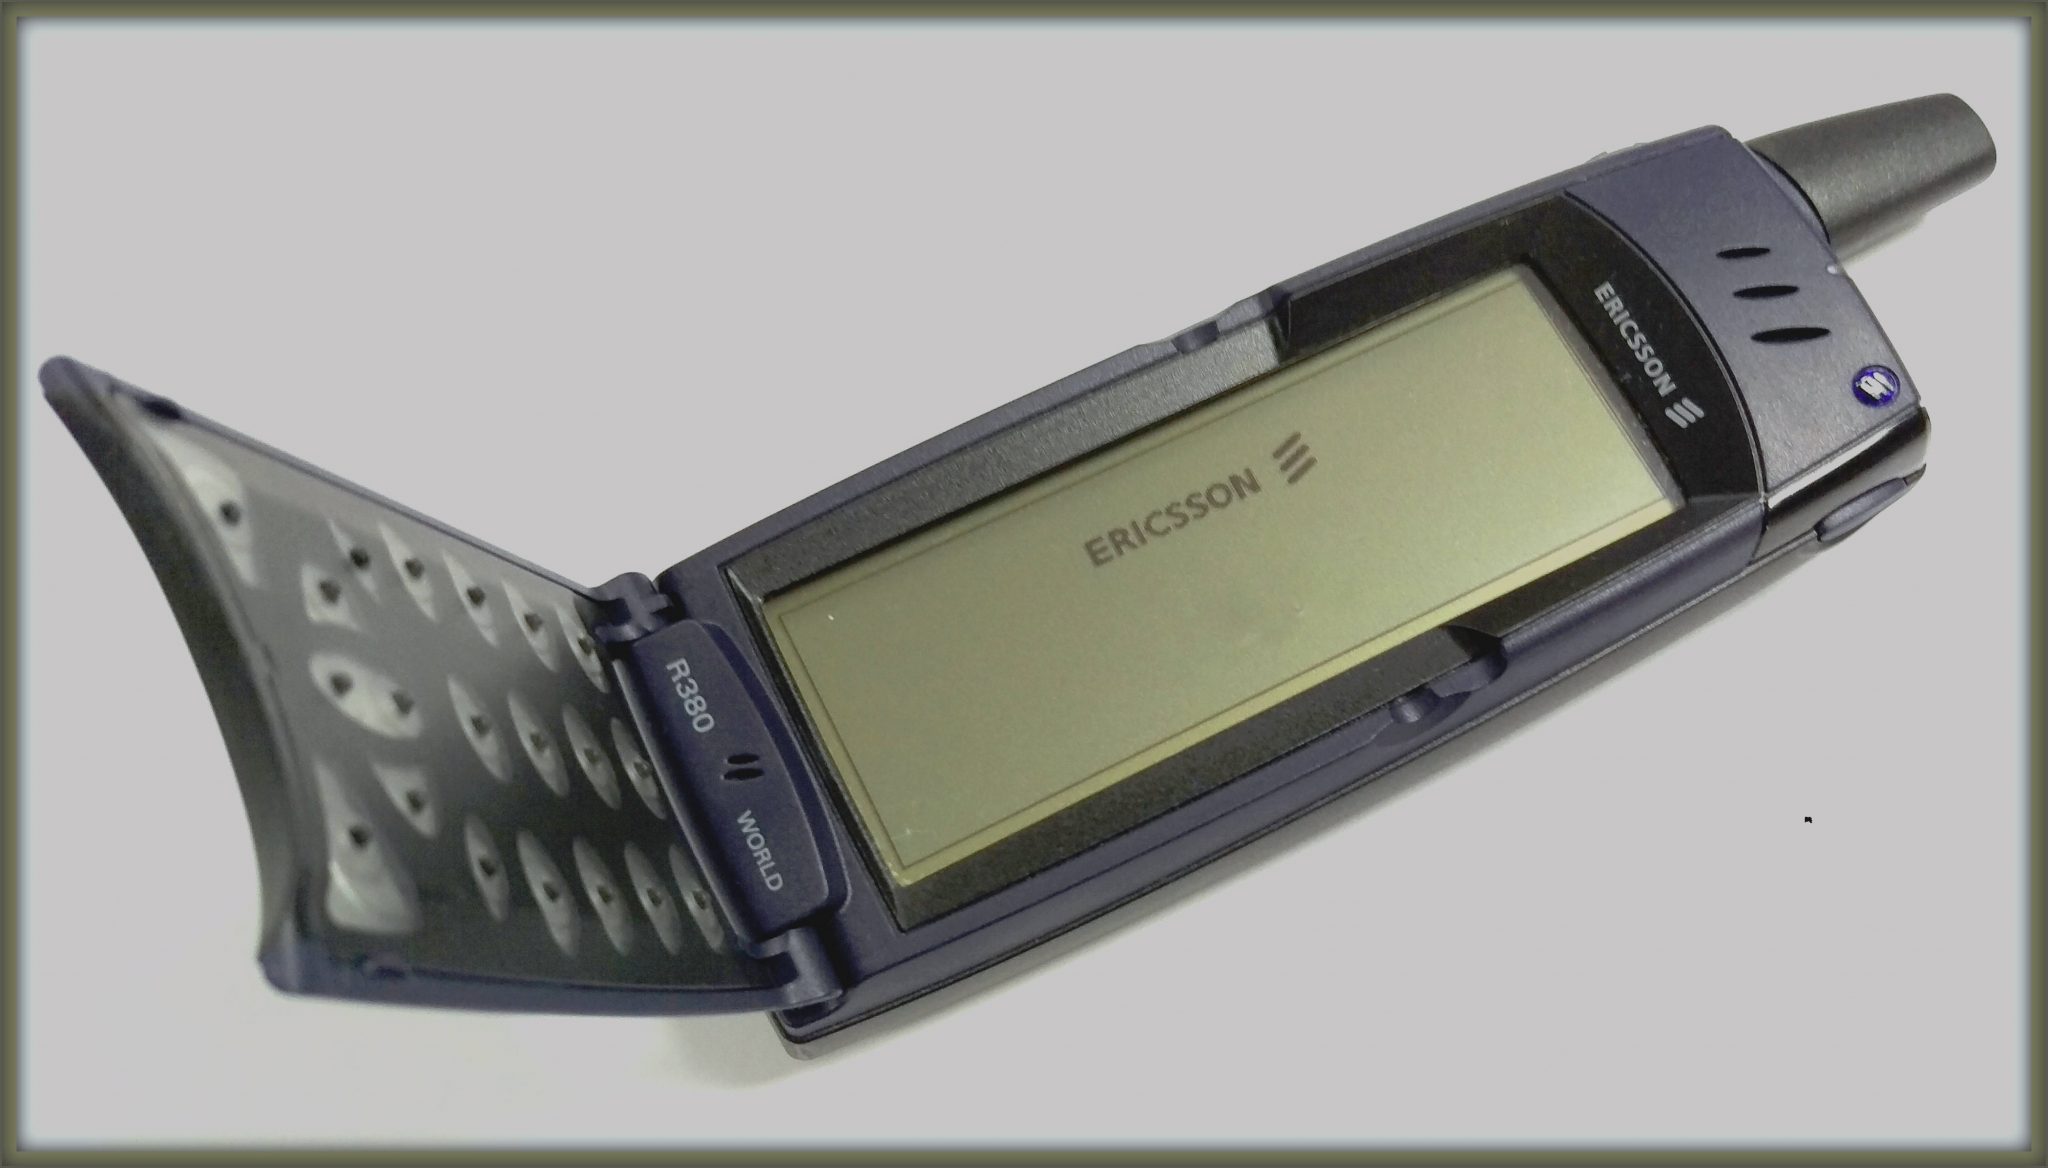 Ericsson r380 (2000)